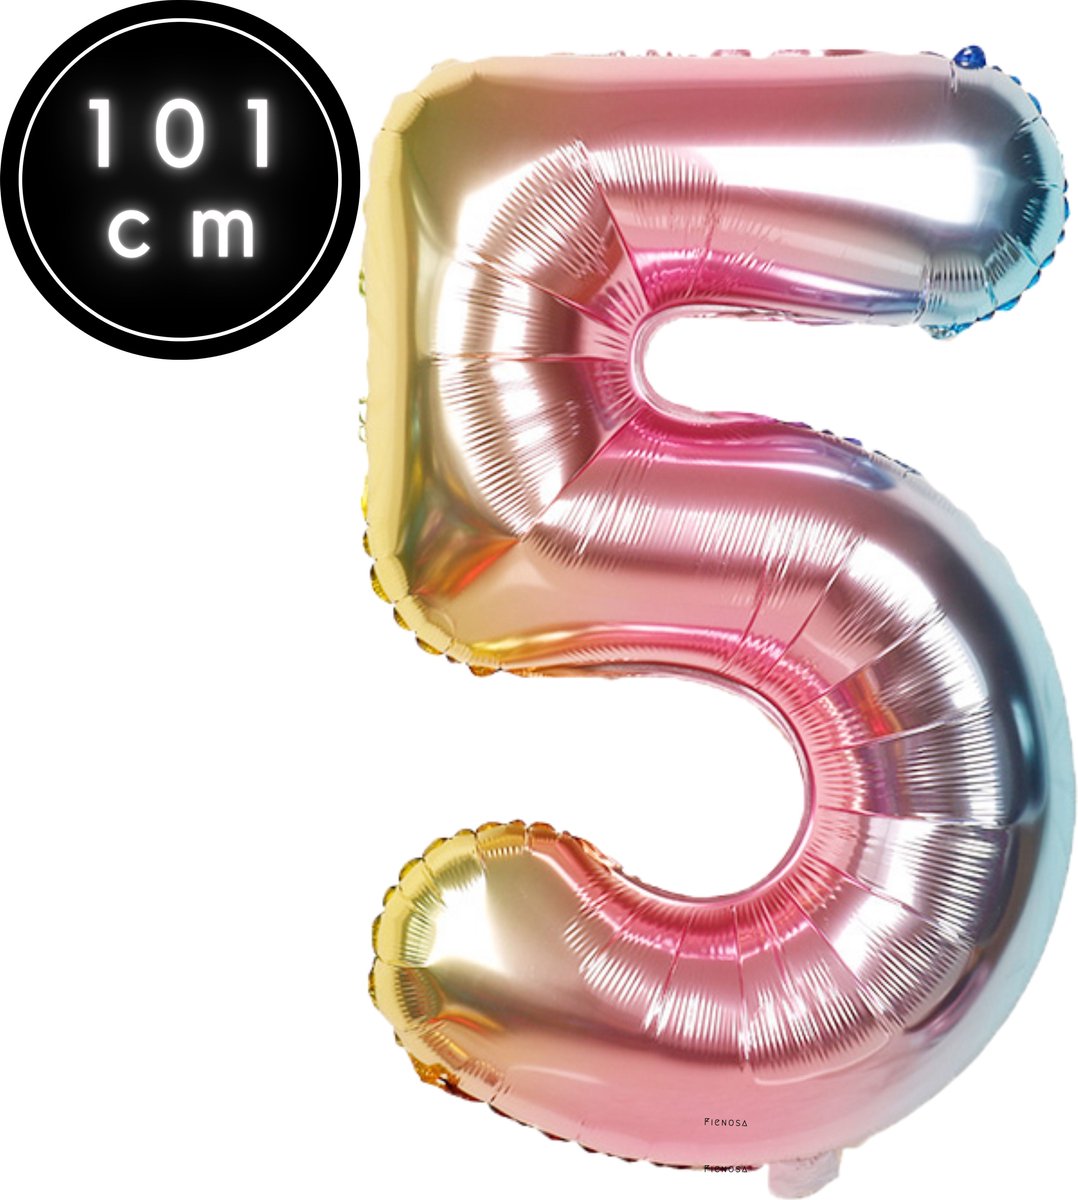 Fienosa Cijfer Ballonnen nummer 5 - Regenboog - 101 cm - XL Groot - Helium Ballon